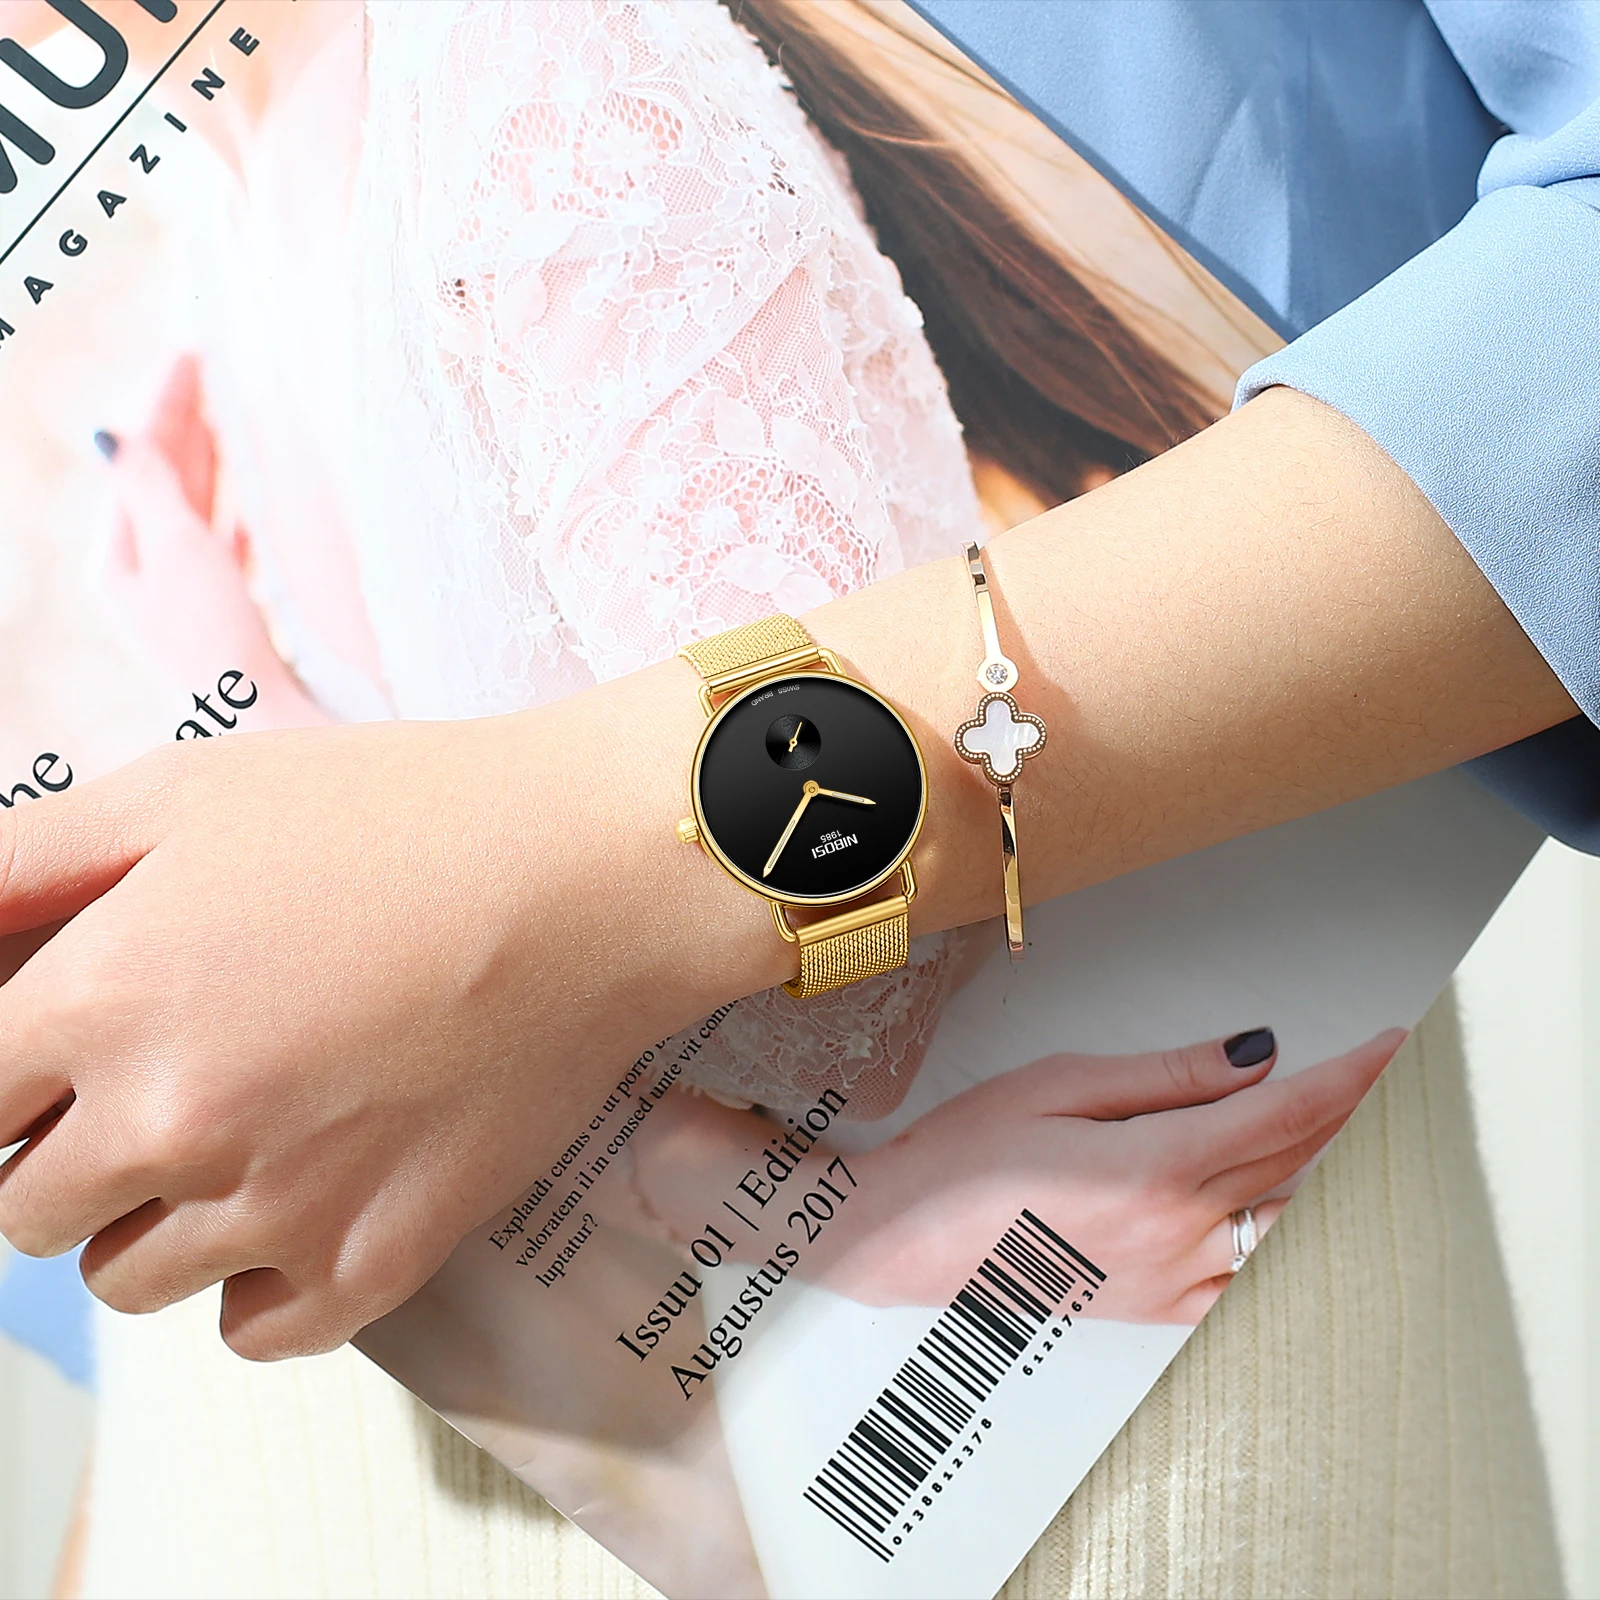 NIBOSI Relogio Feminino женские часы люксовый бренд золотые кварцевые женские часы Женская мода платье браслет водонепроницаемый Reloj Mujer